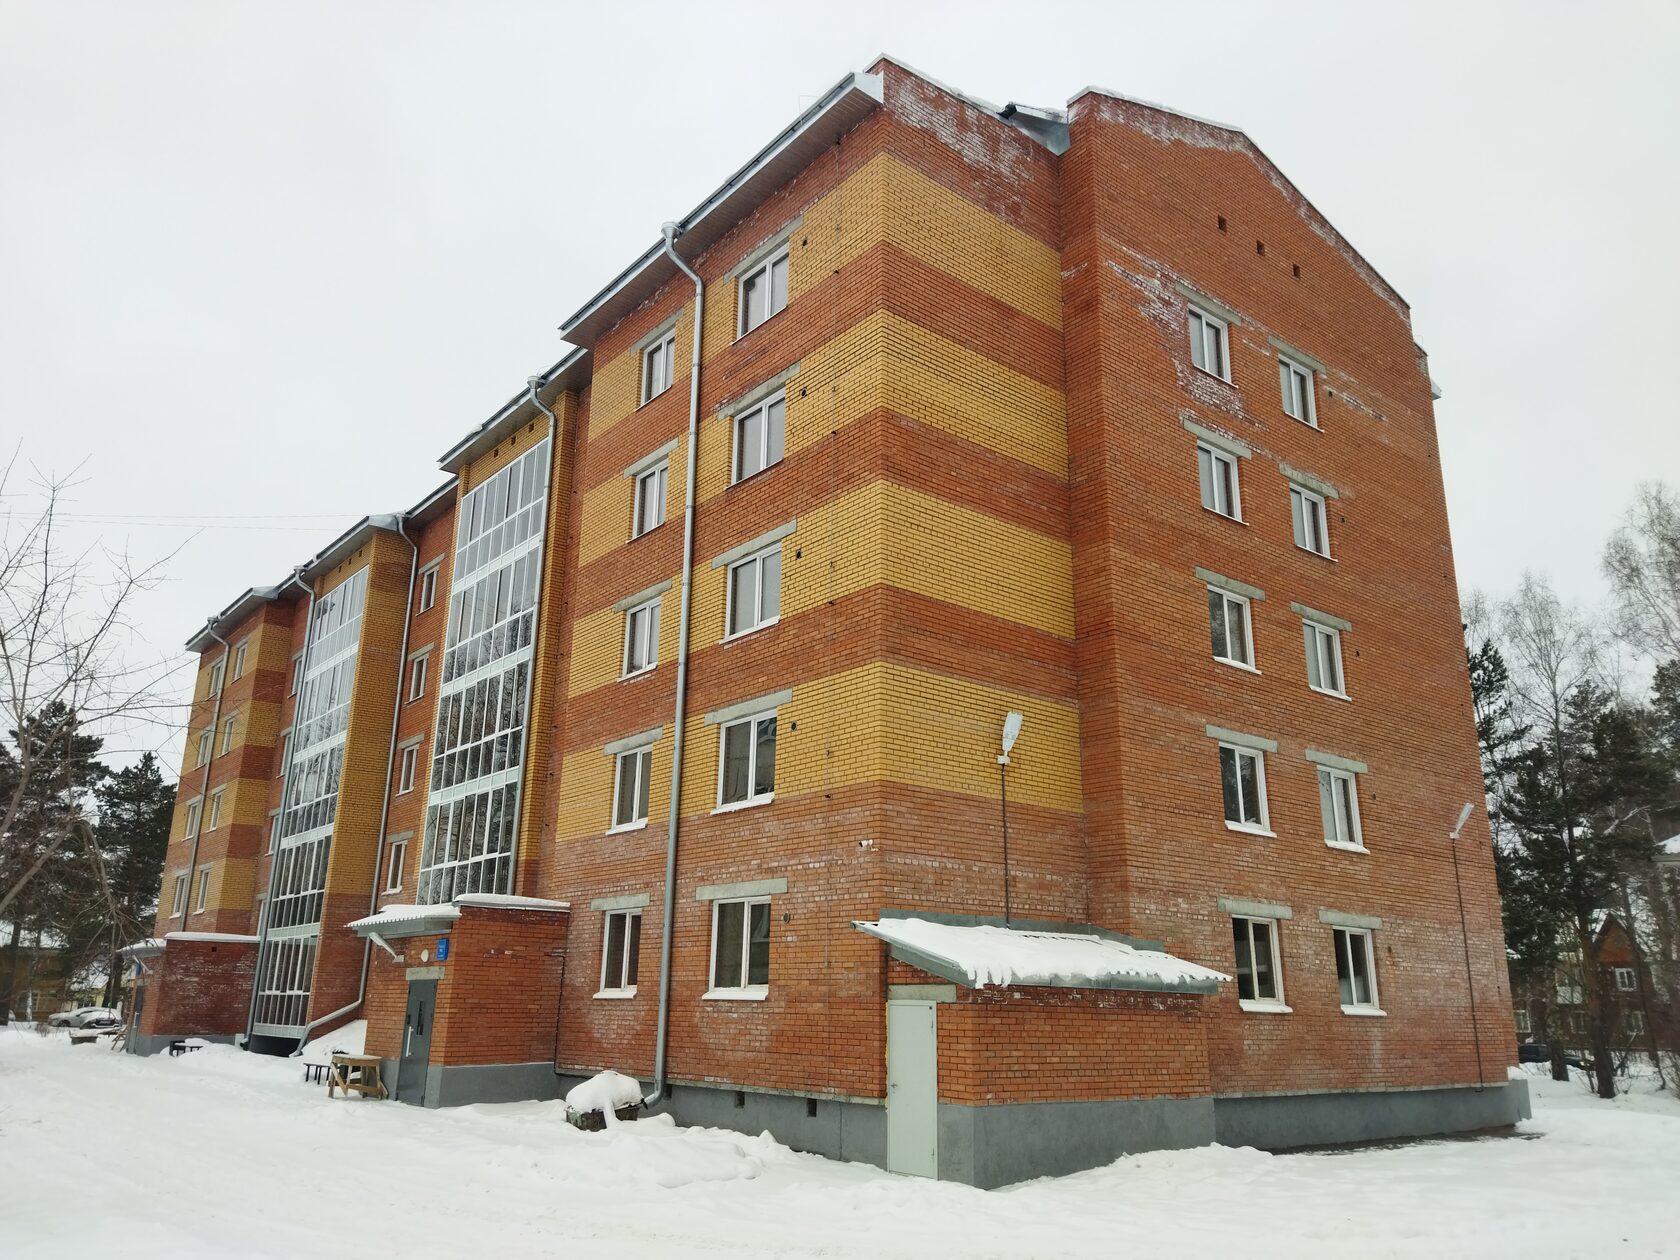 Многоквартирный жилой дом на ул. Строителей, 7 ЗКПД ТДСК